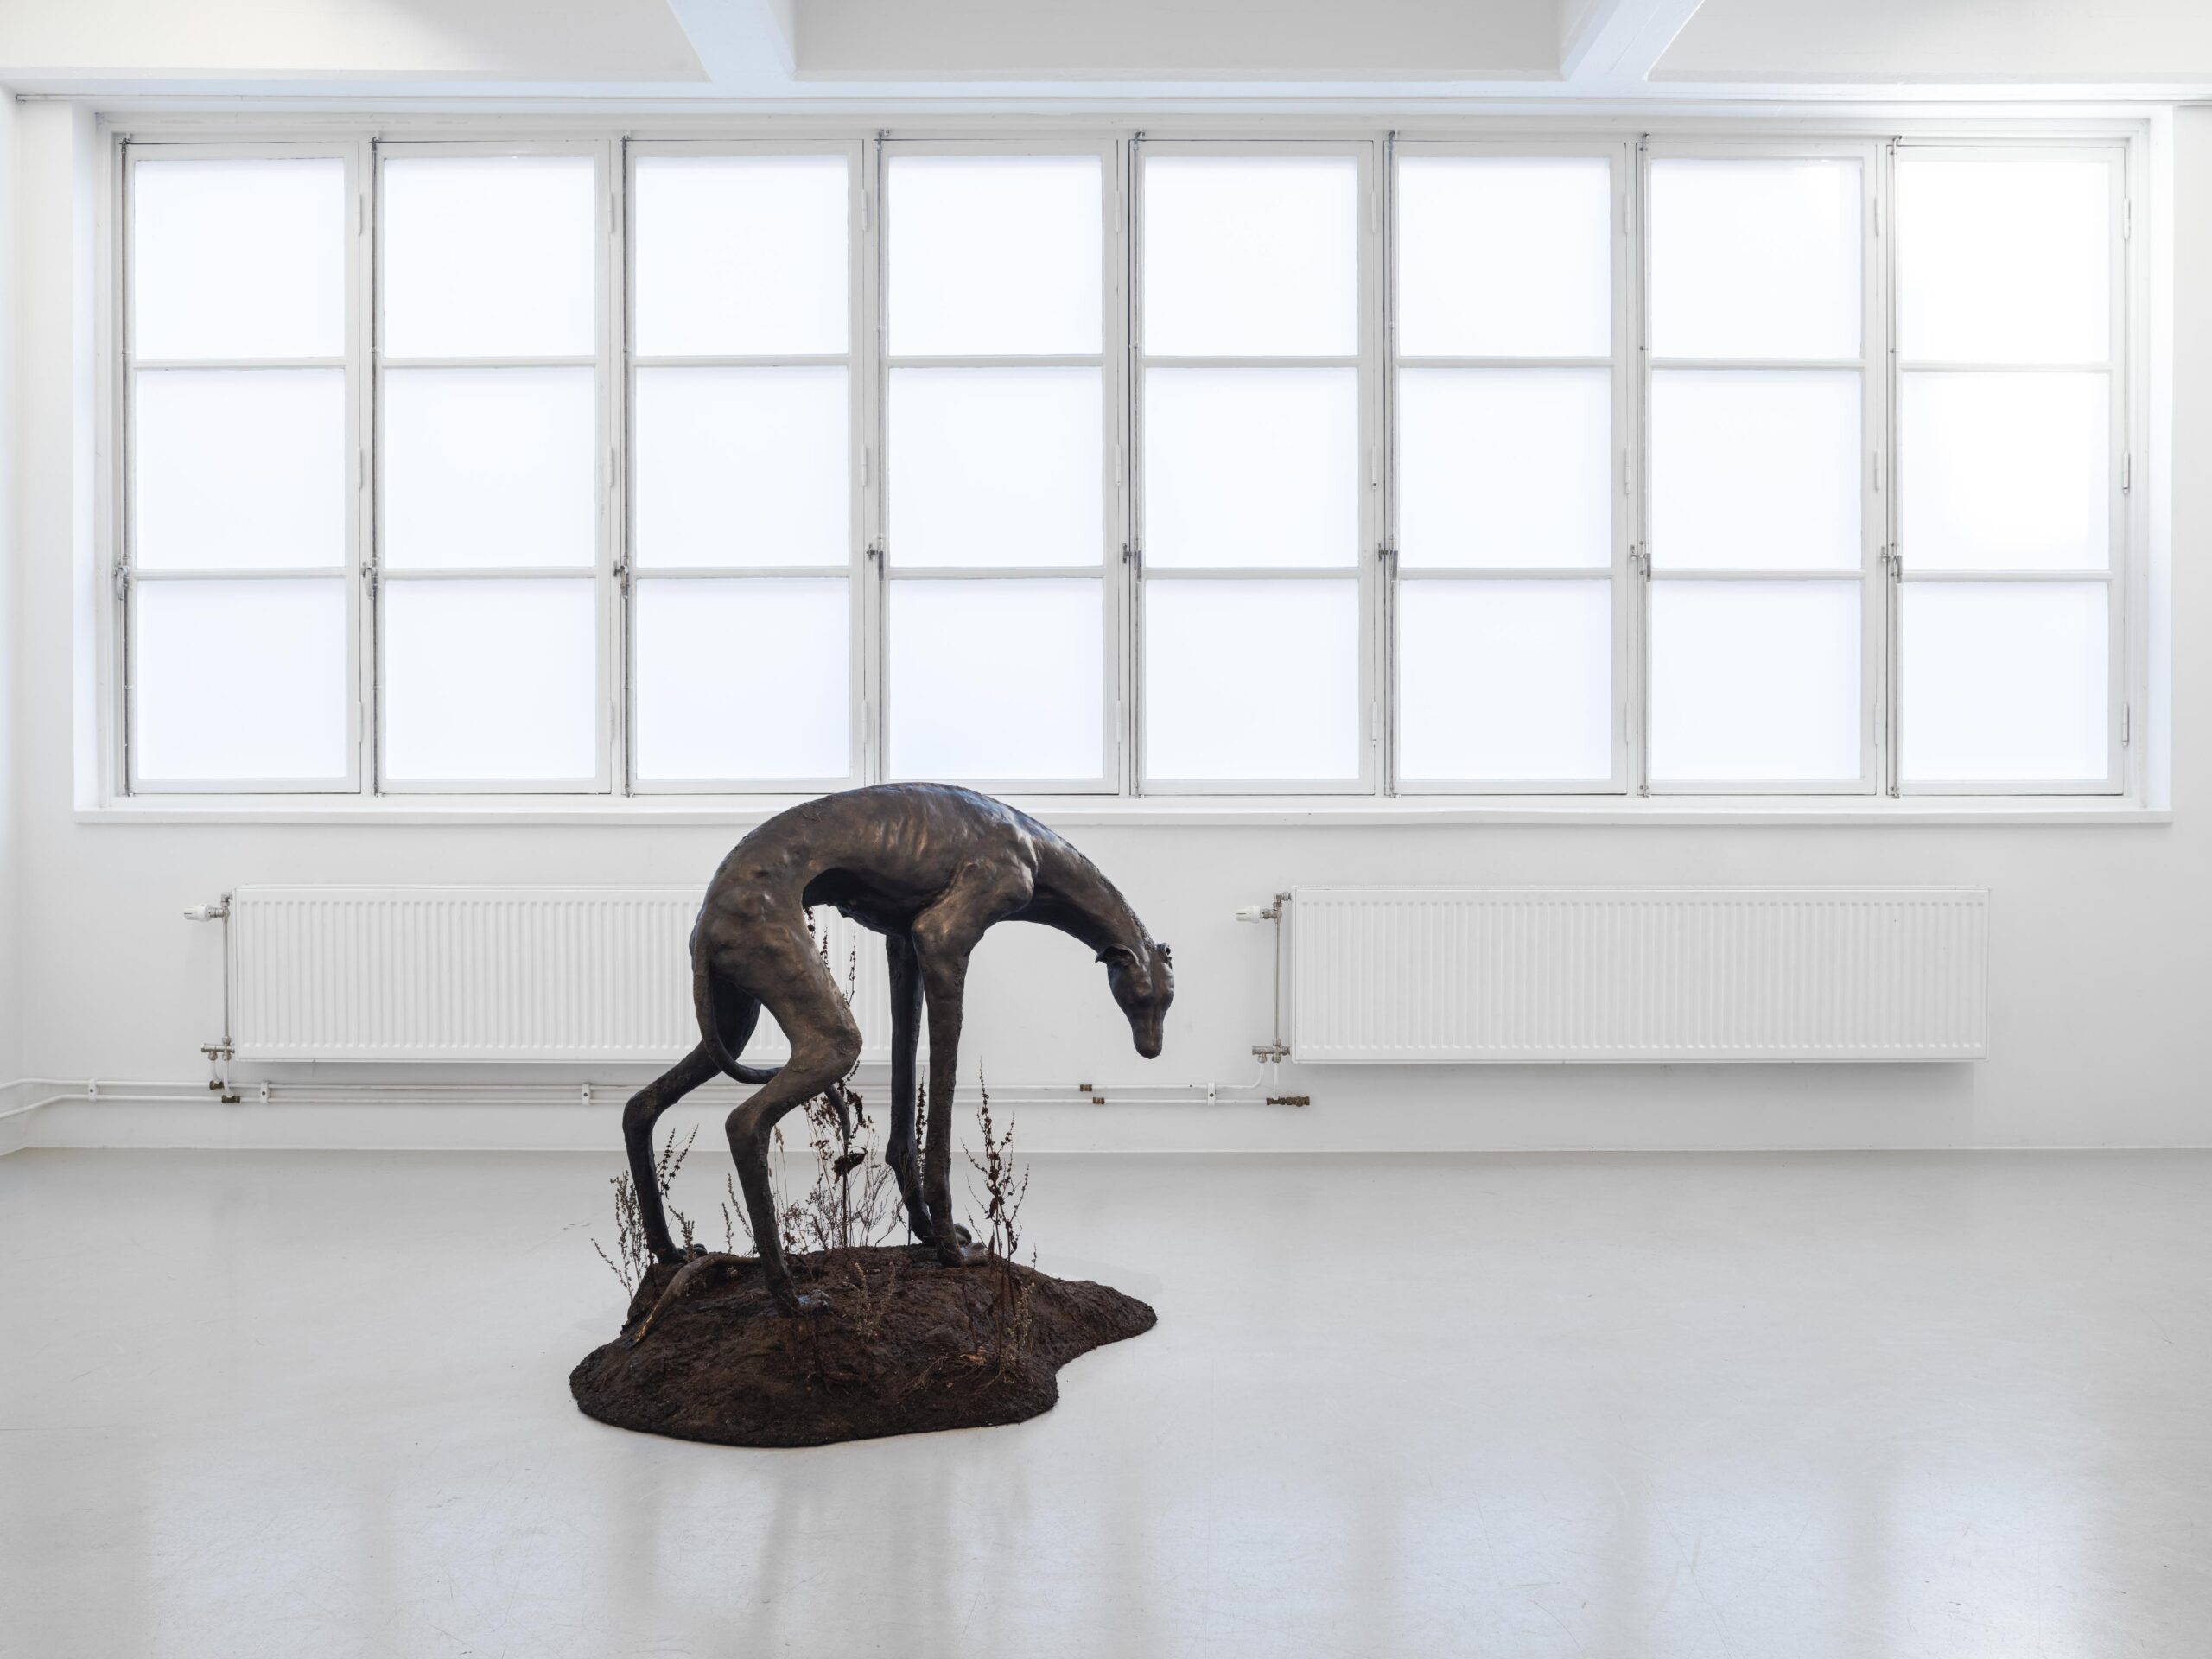 Installation view, Lovisa Ringborg, Silver och svart, 2021, Cecilia Hillström Gallery. Photo: Jean-Baptiste Béranger